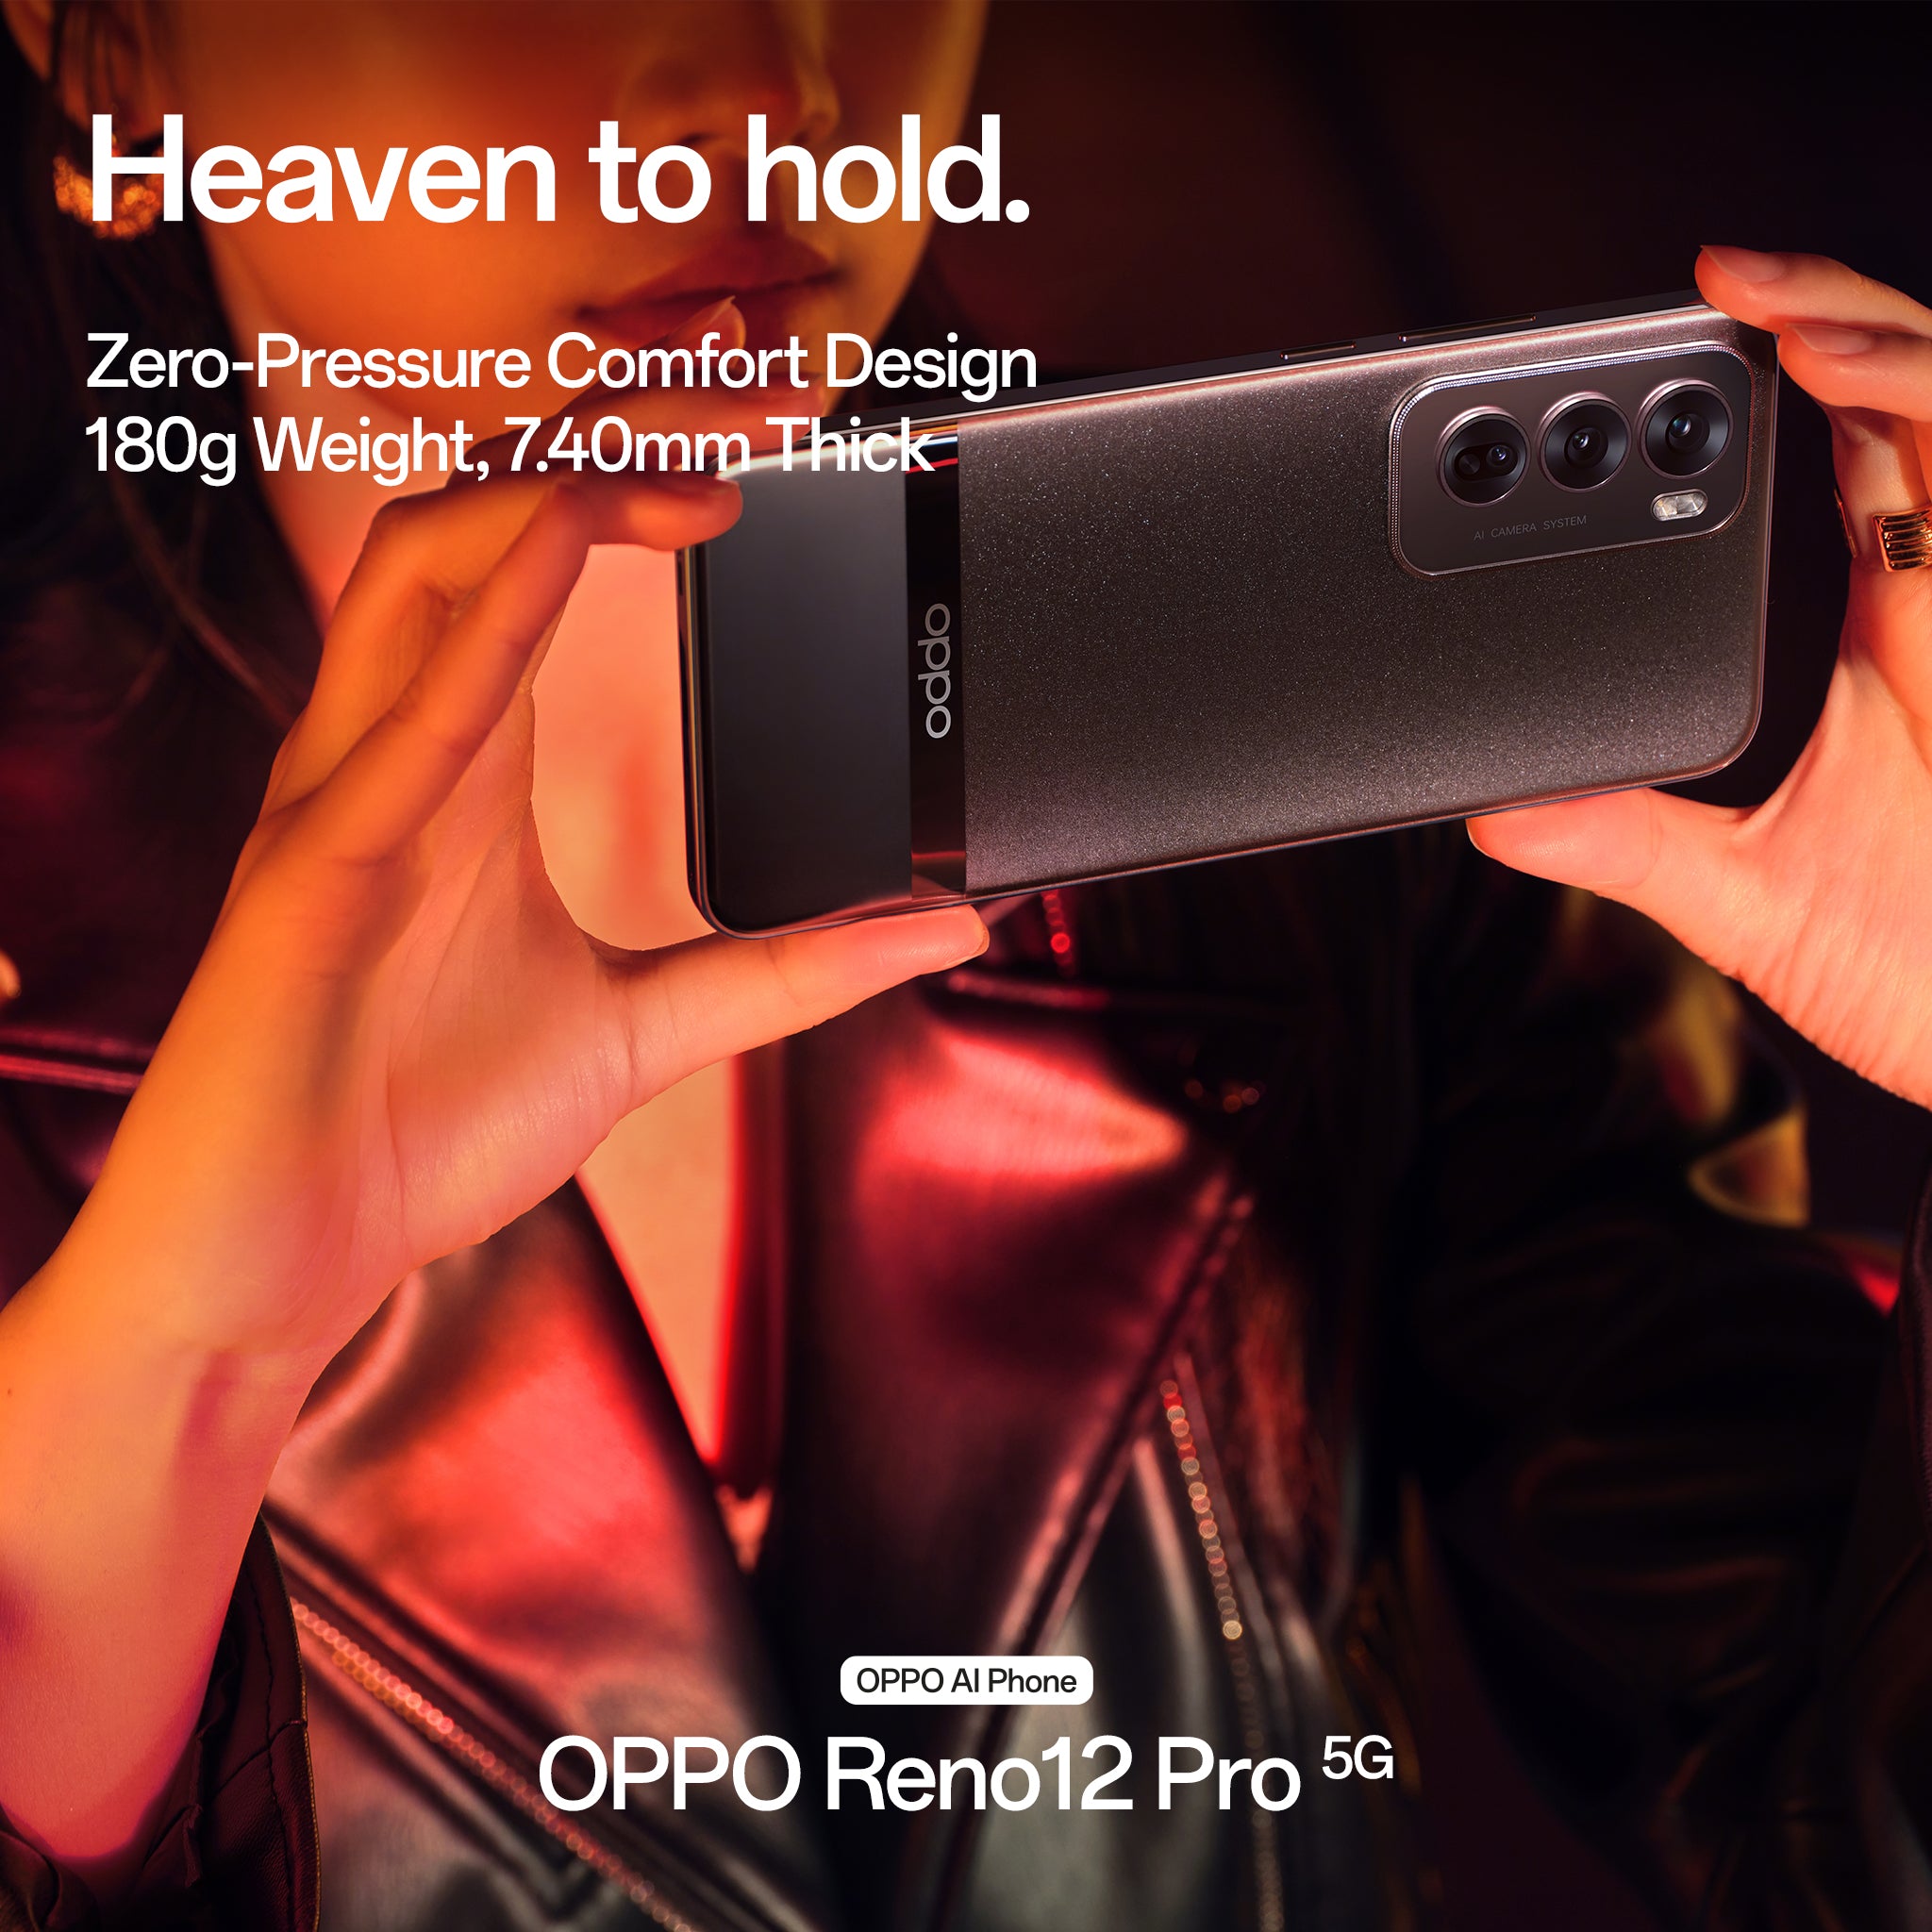 OPPO Reno12 Pro 5G